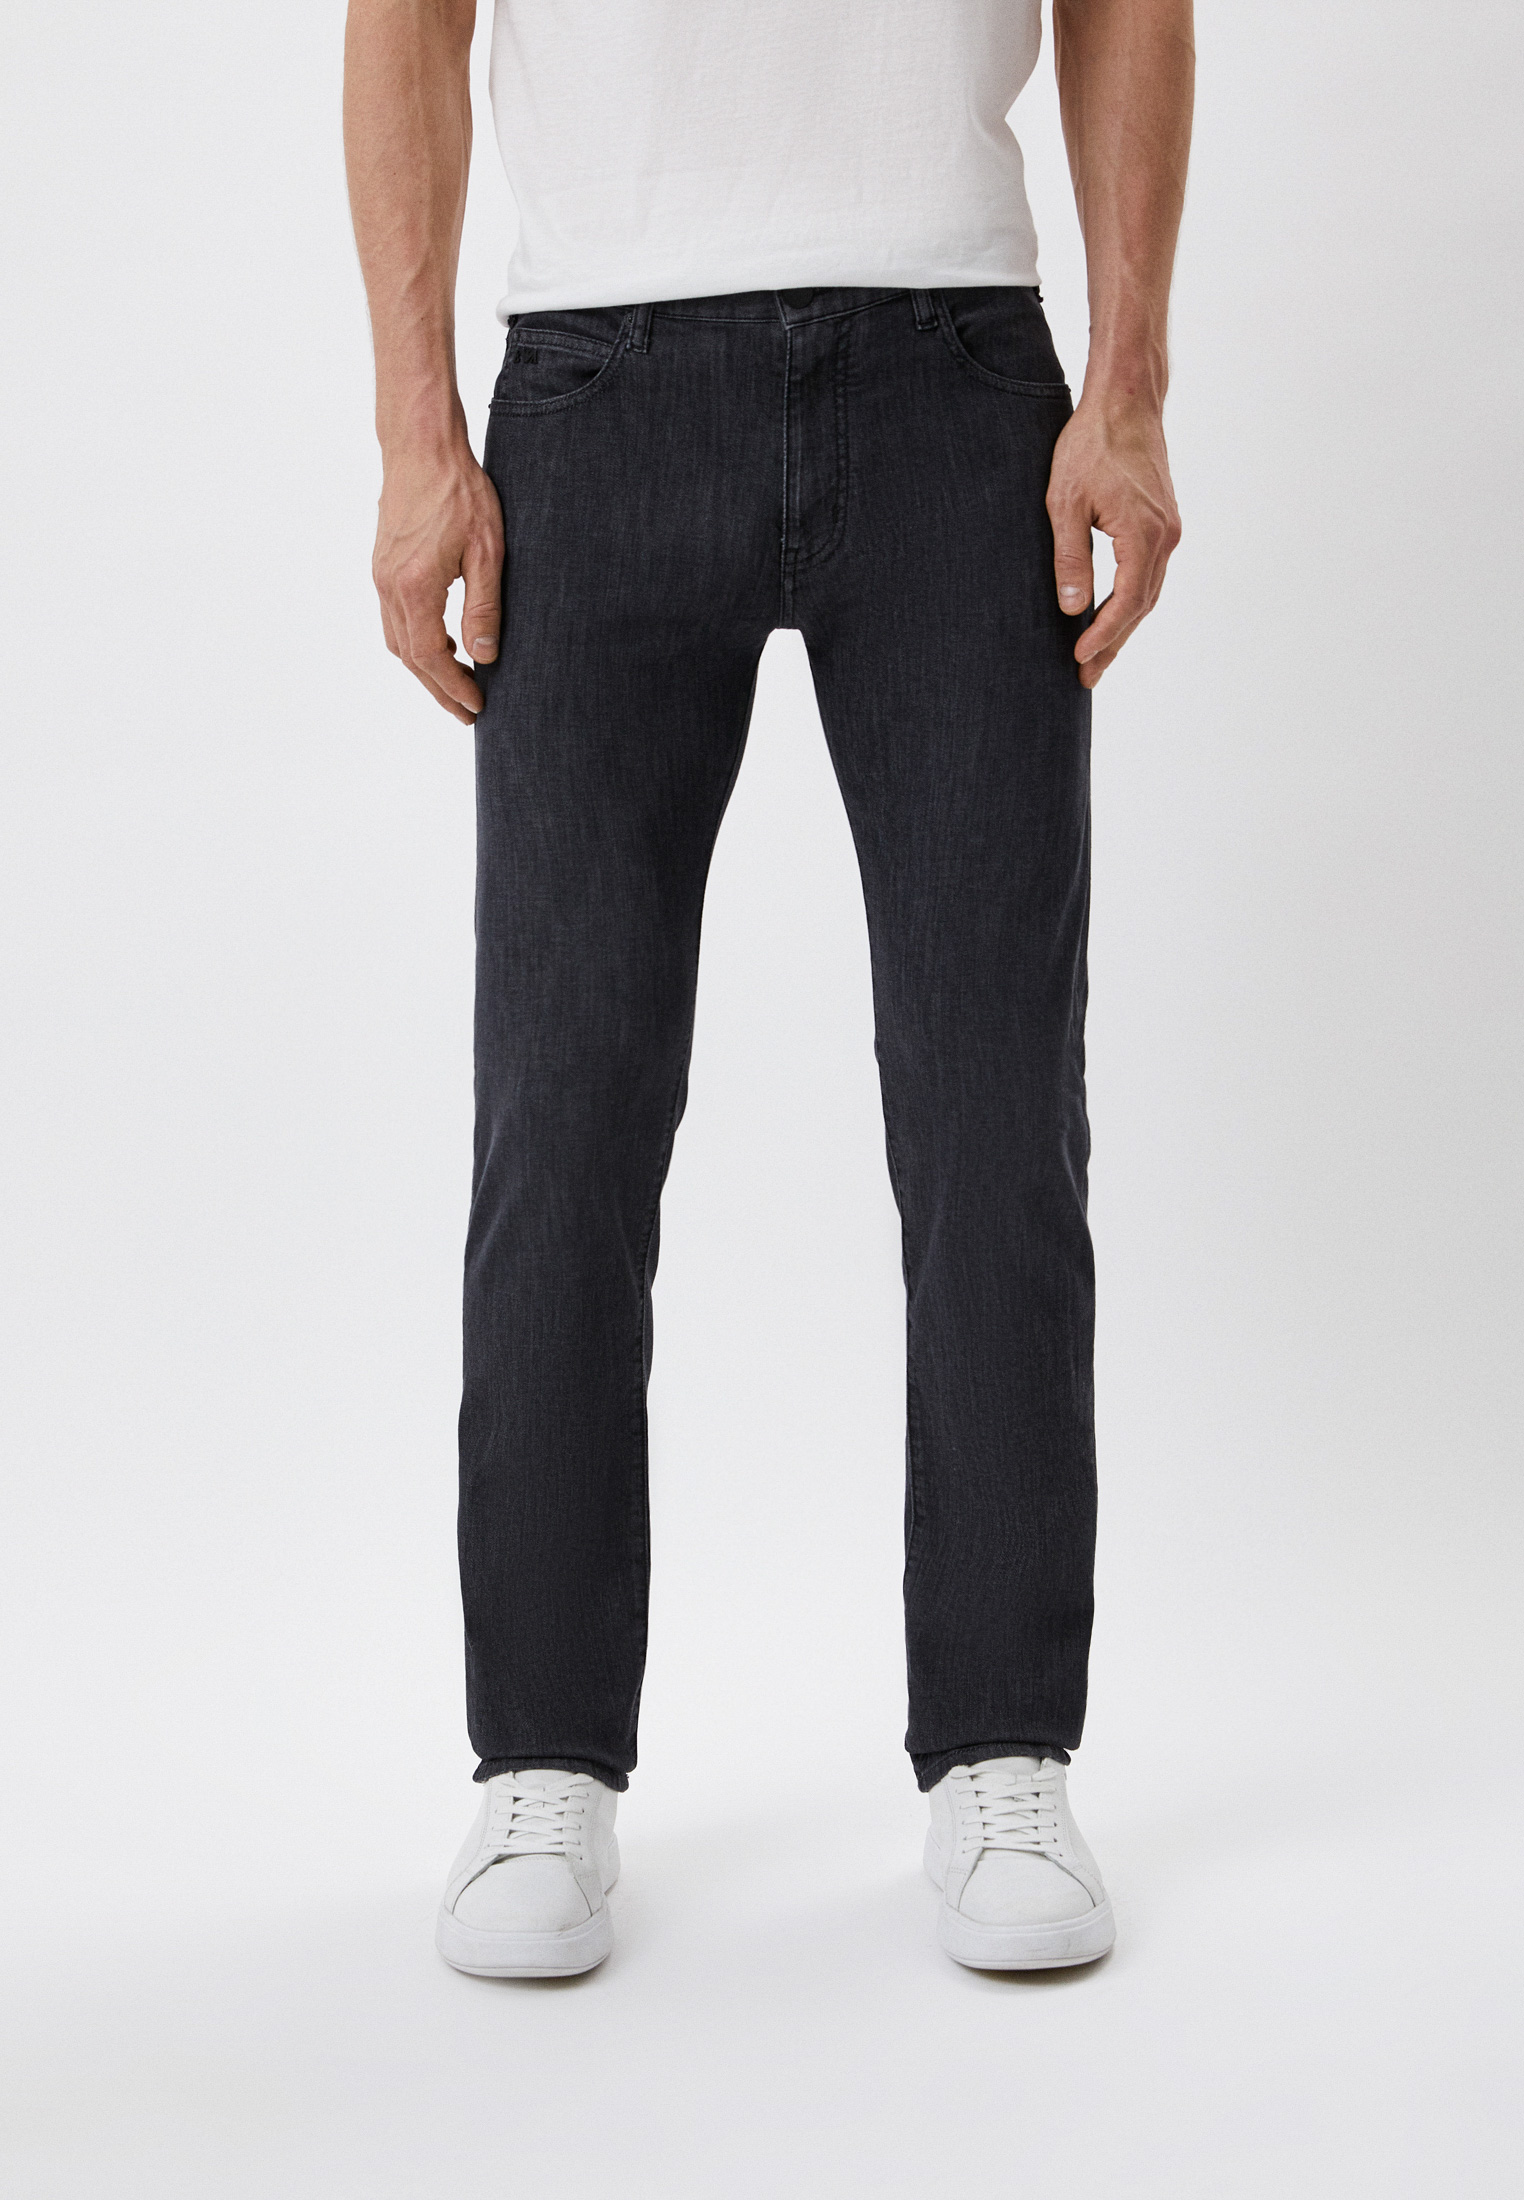 Мужские прямые джинсы Emporio Armani (Эмпорио Армани) 8N1J45 1D85Z: изображение 1